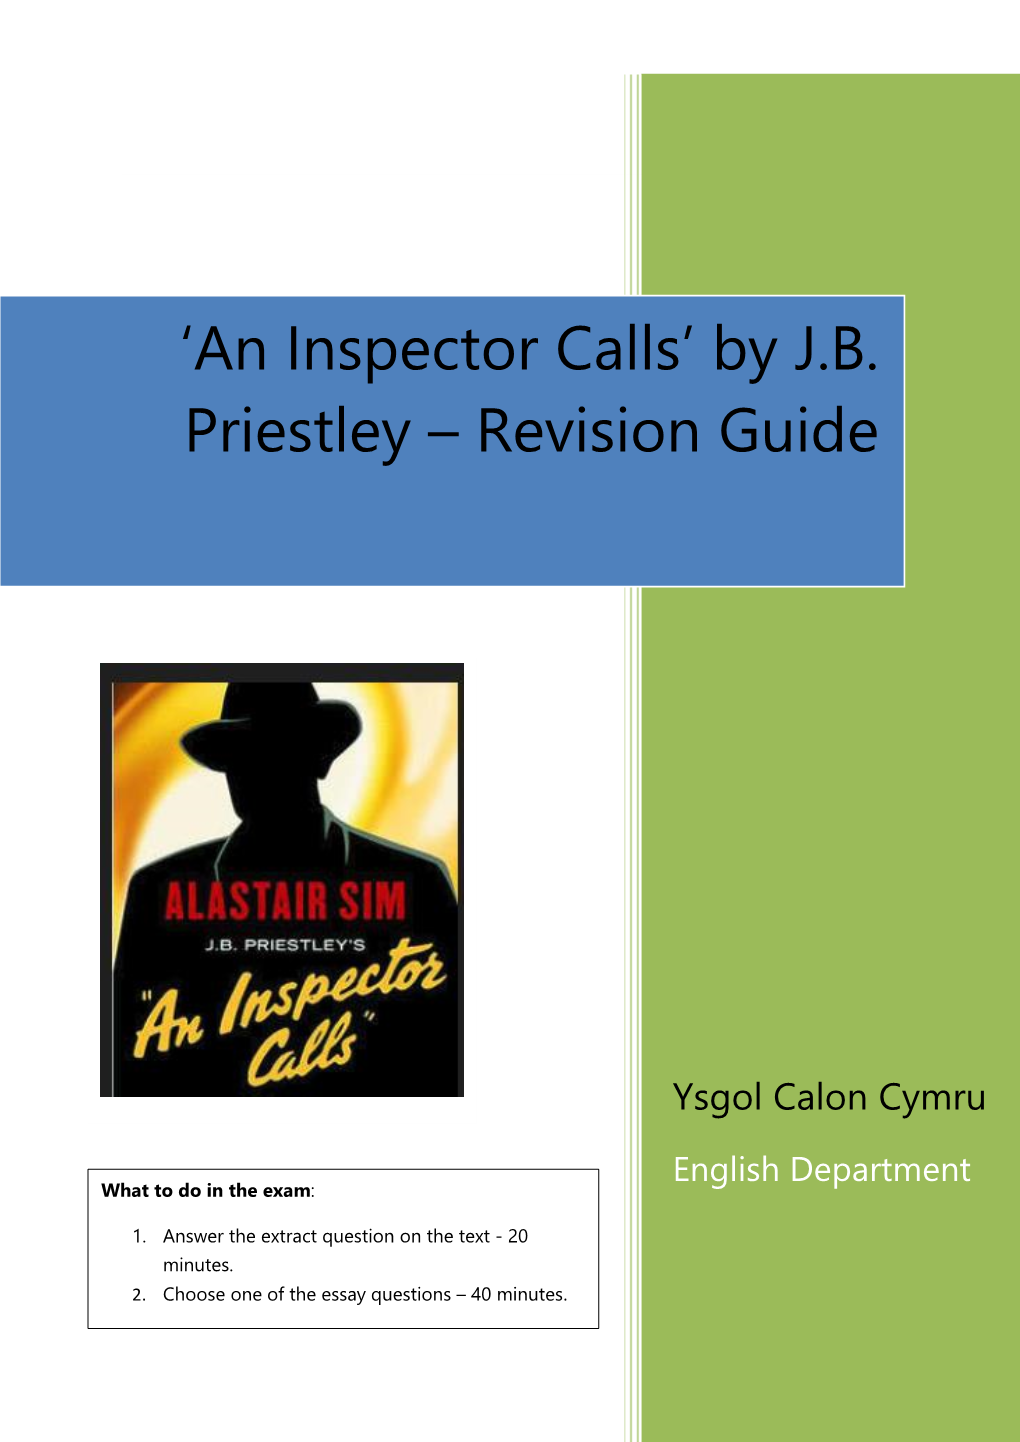 An Inspector Calls’ by J.B